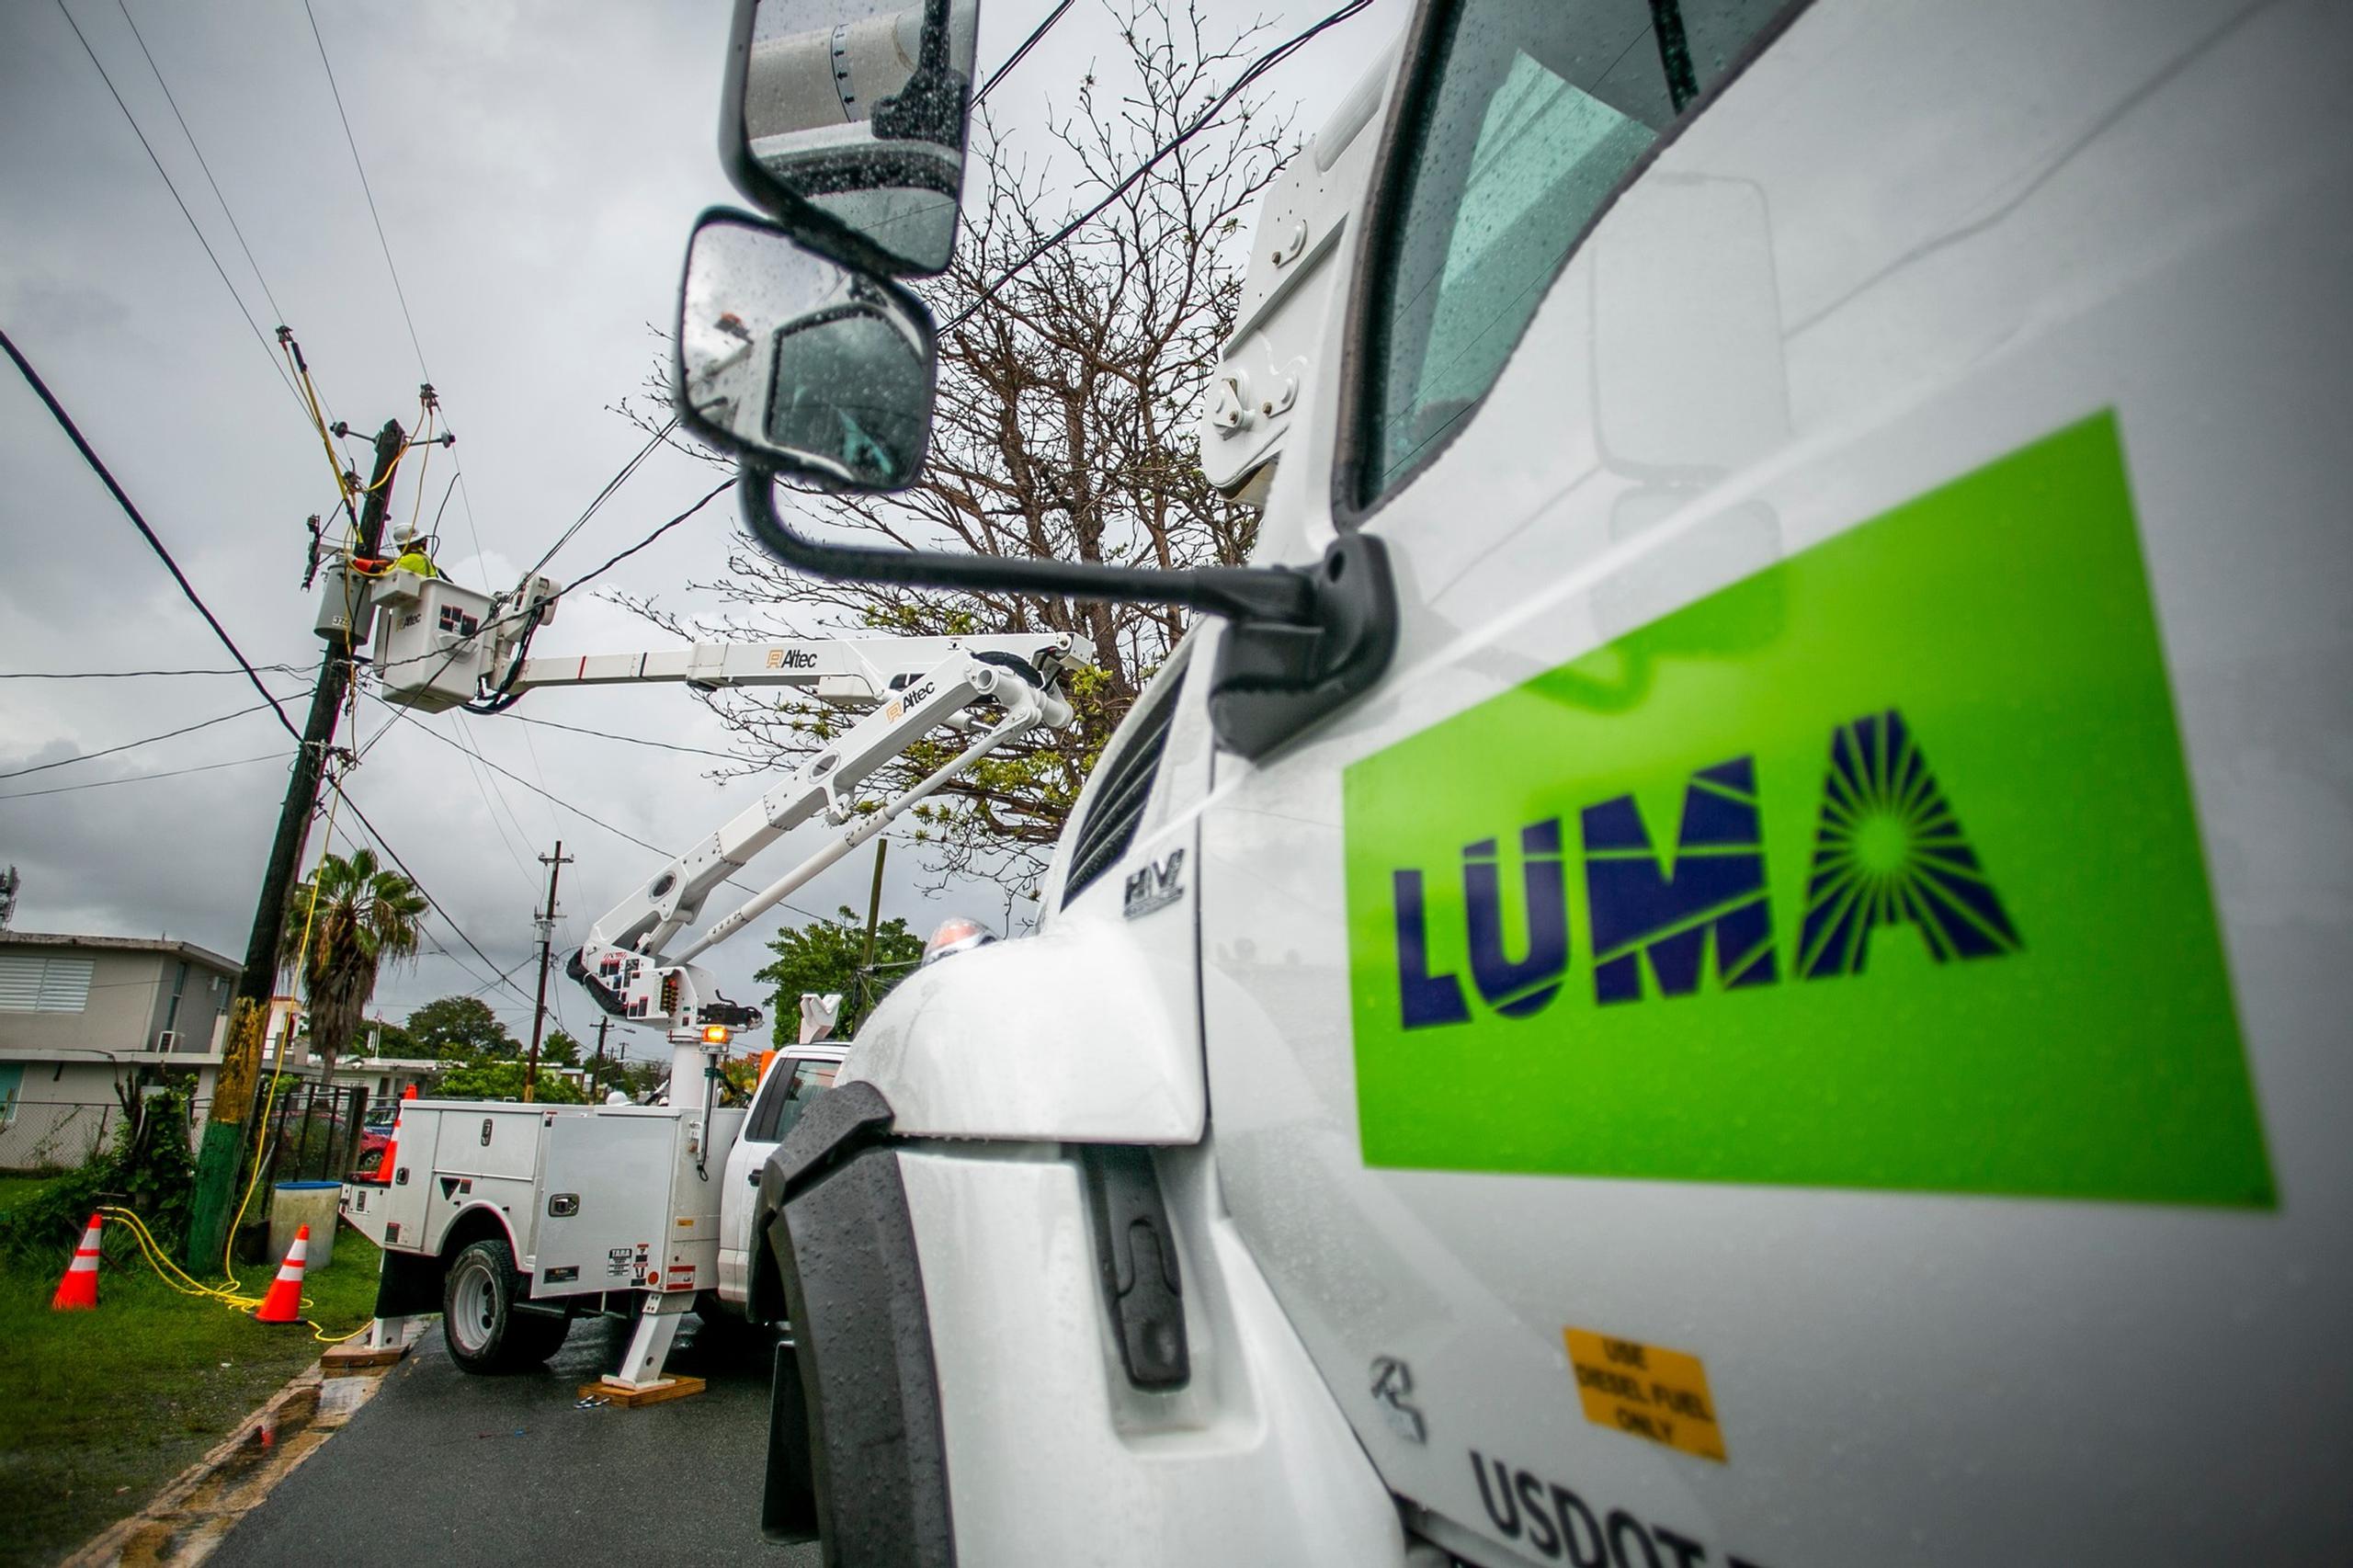 732,324 clientes se encuentran reconectados a la red de transmisión y distribución de electricidad en la Isla, informa LUMA Energy.